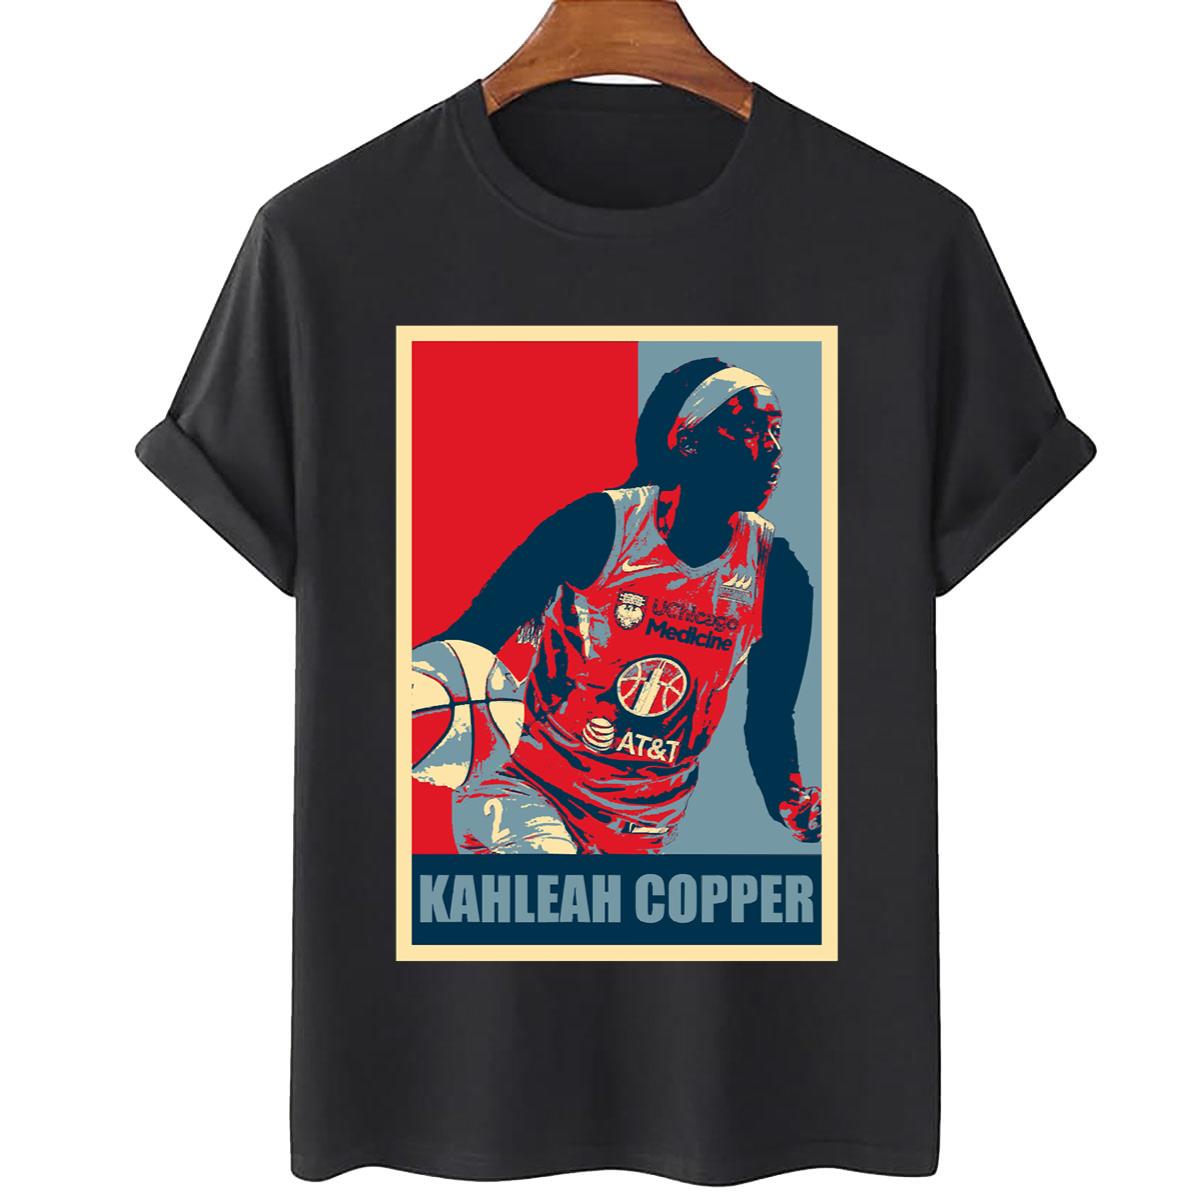 Kahleah Copper Unisex T-Shirt